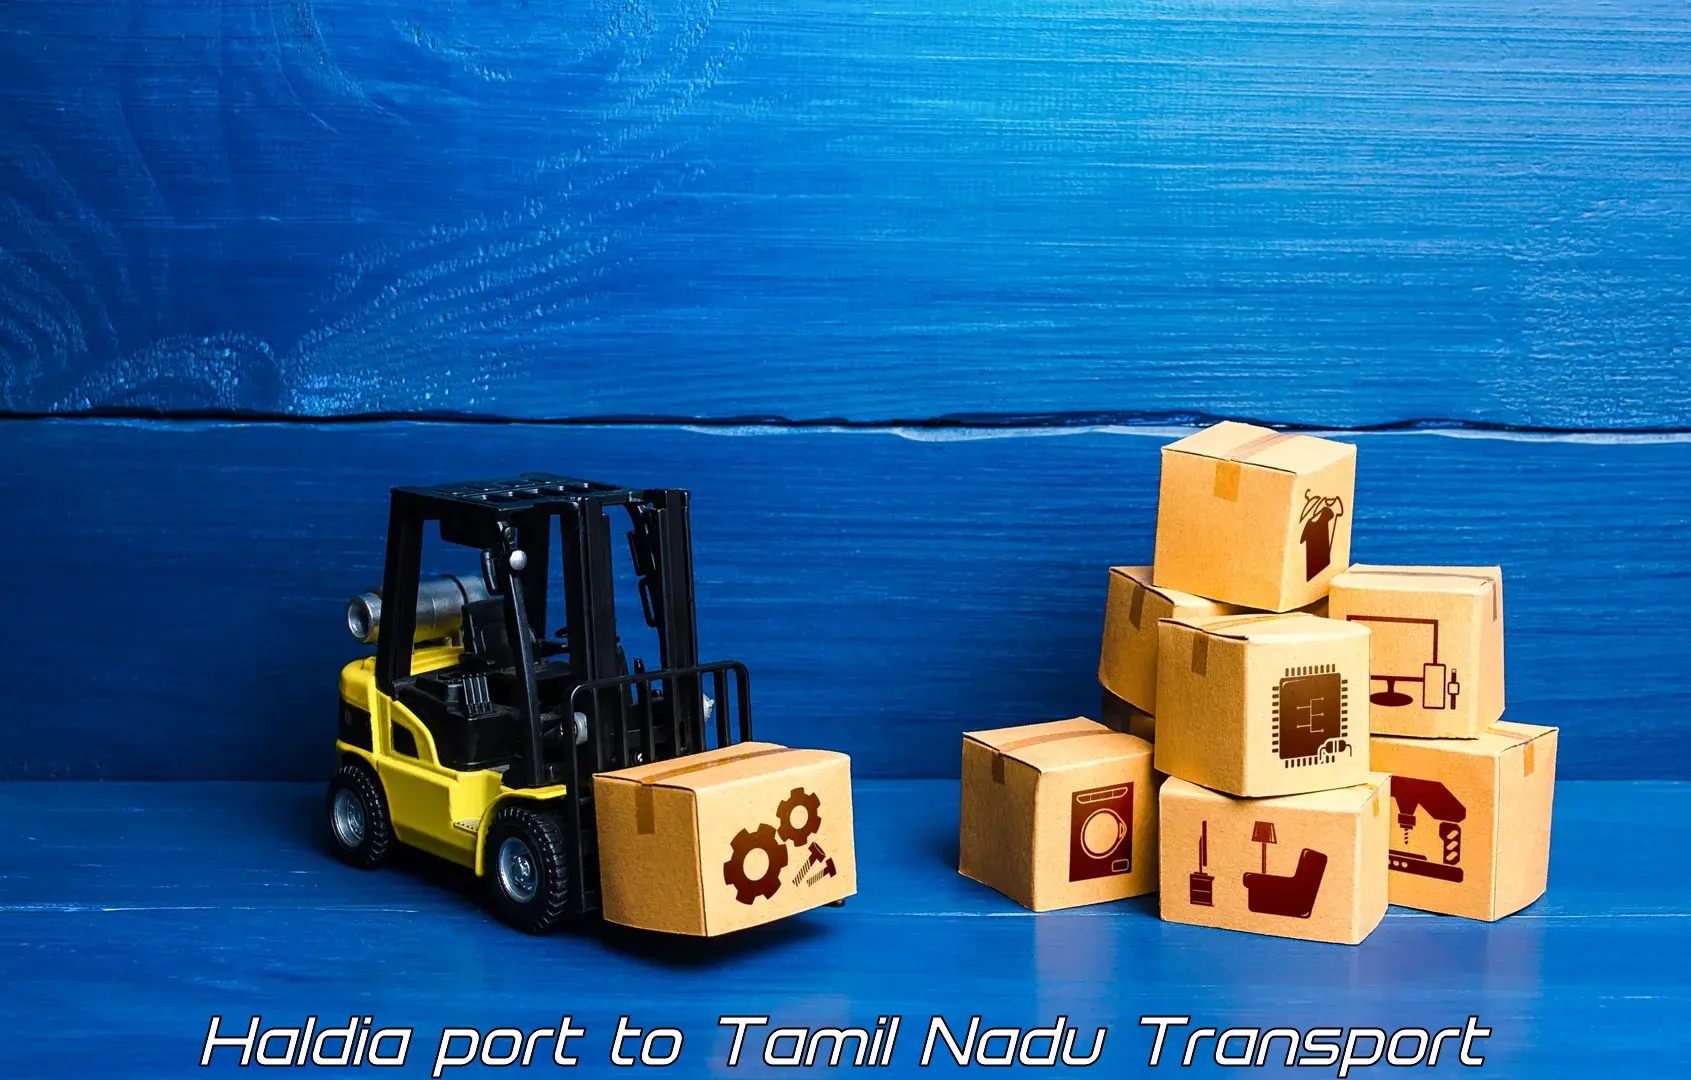 Furniture transport service Haldia port to Arakkonam